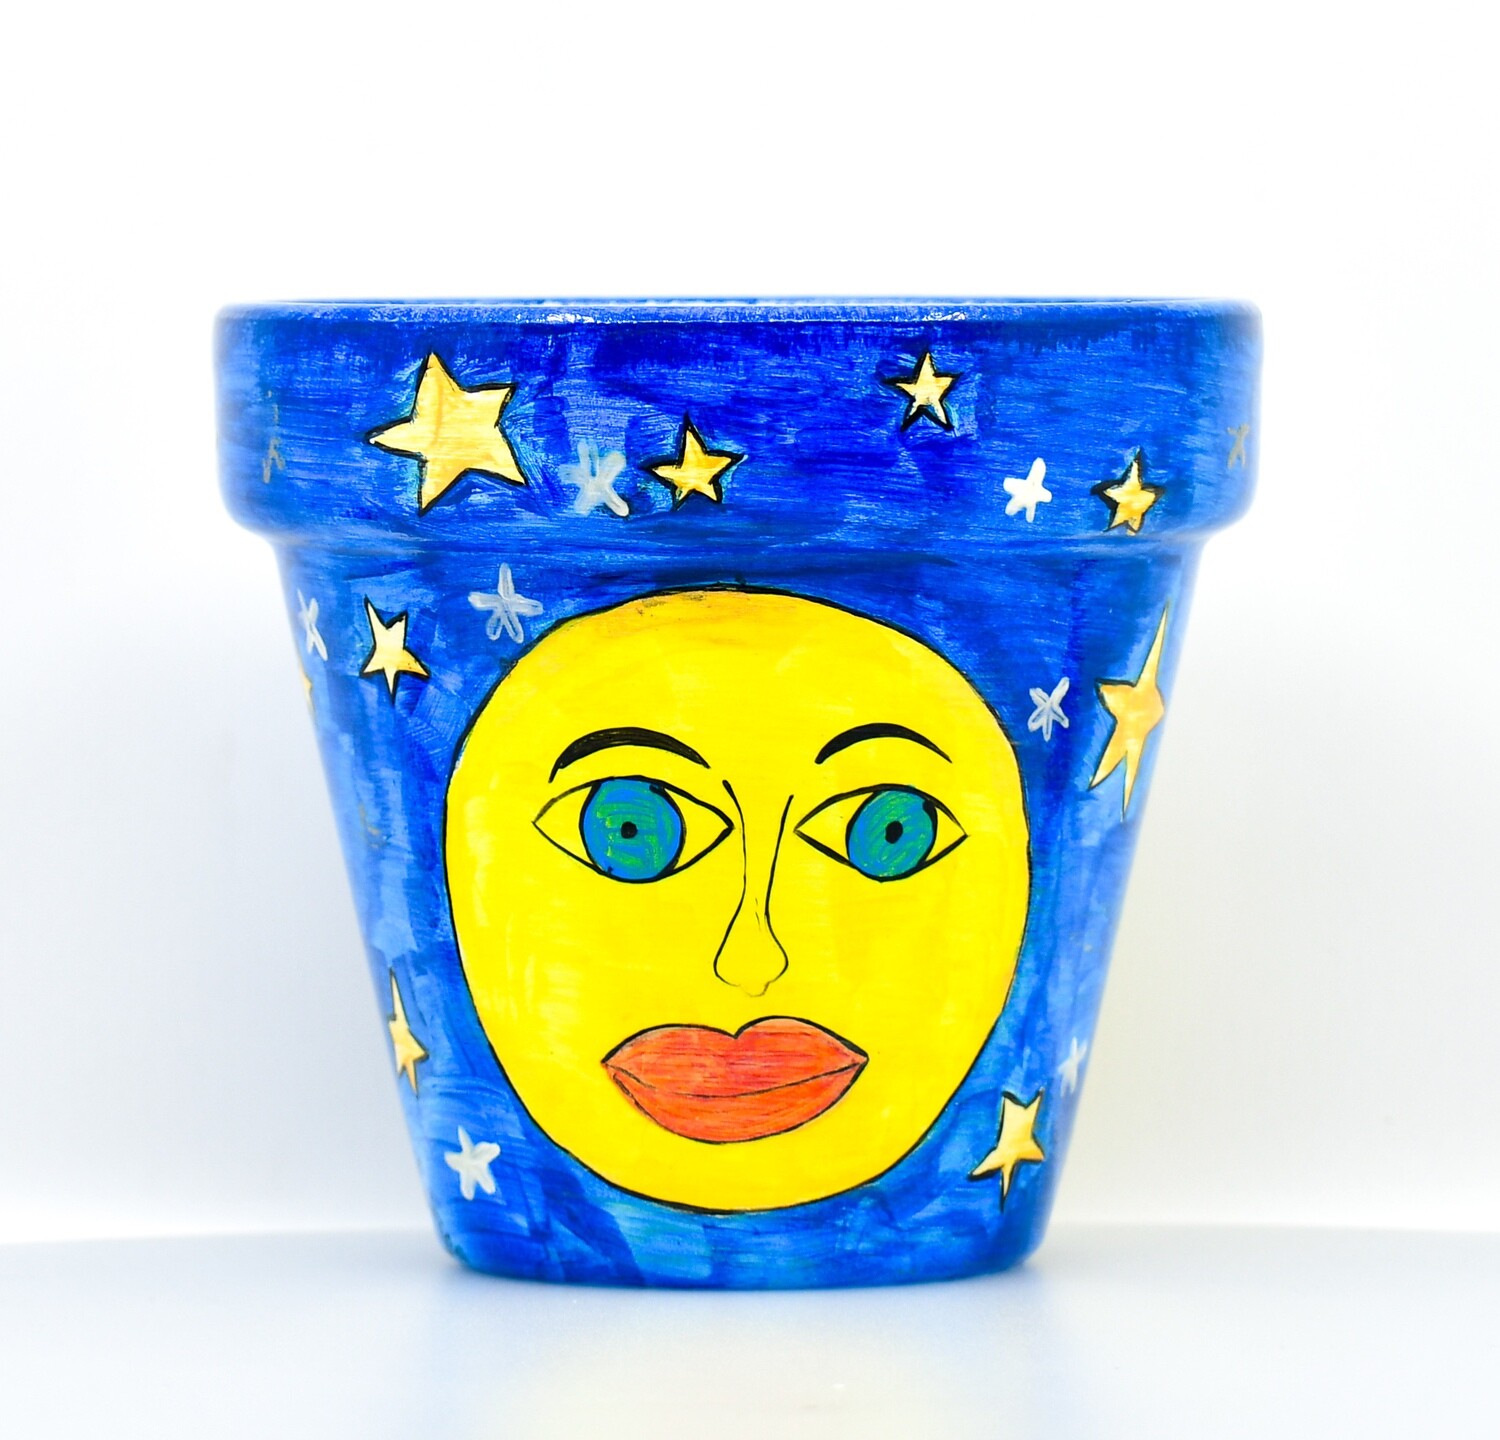 "La luna" hand painted ceramic planter